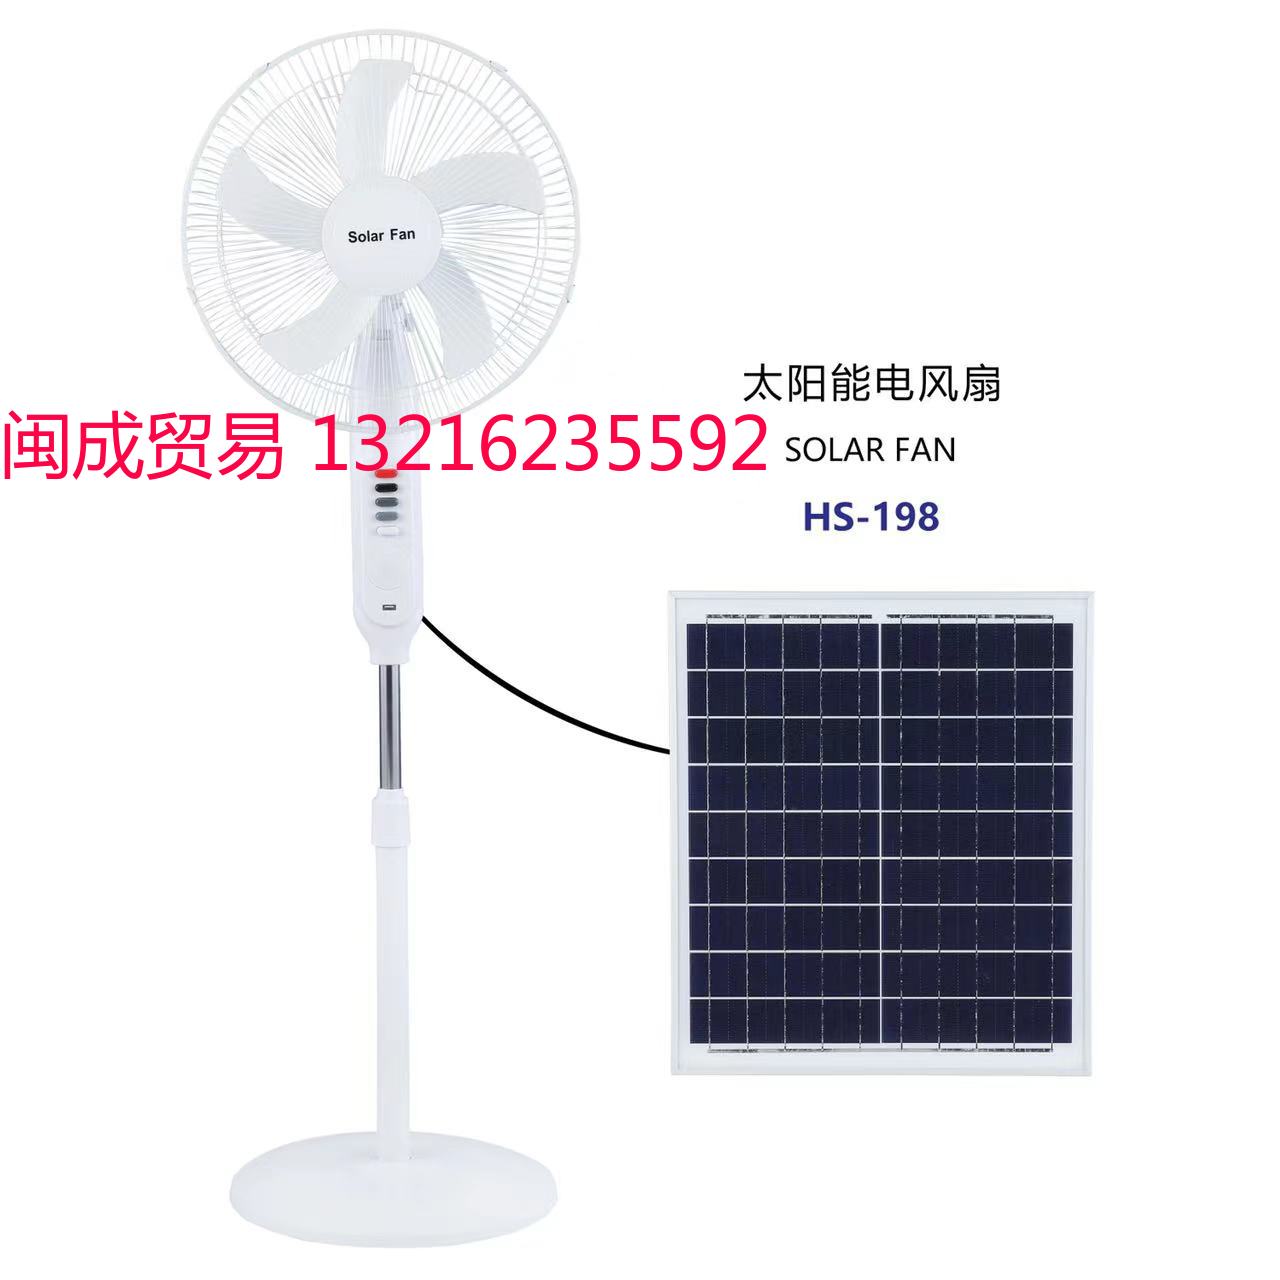 太阳能风扇 Solar fan HS-198